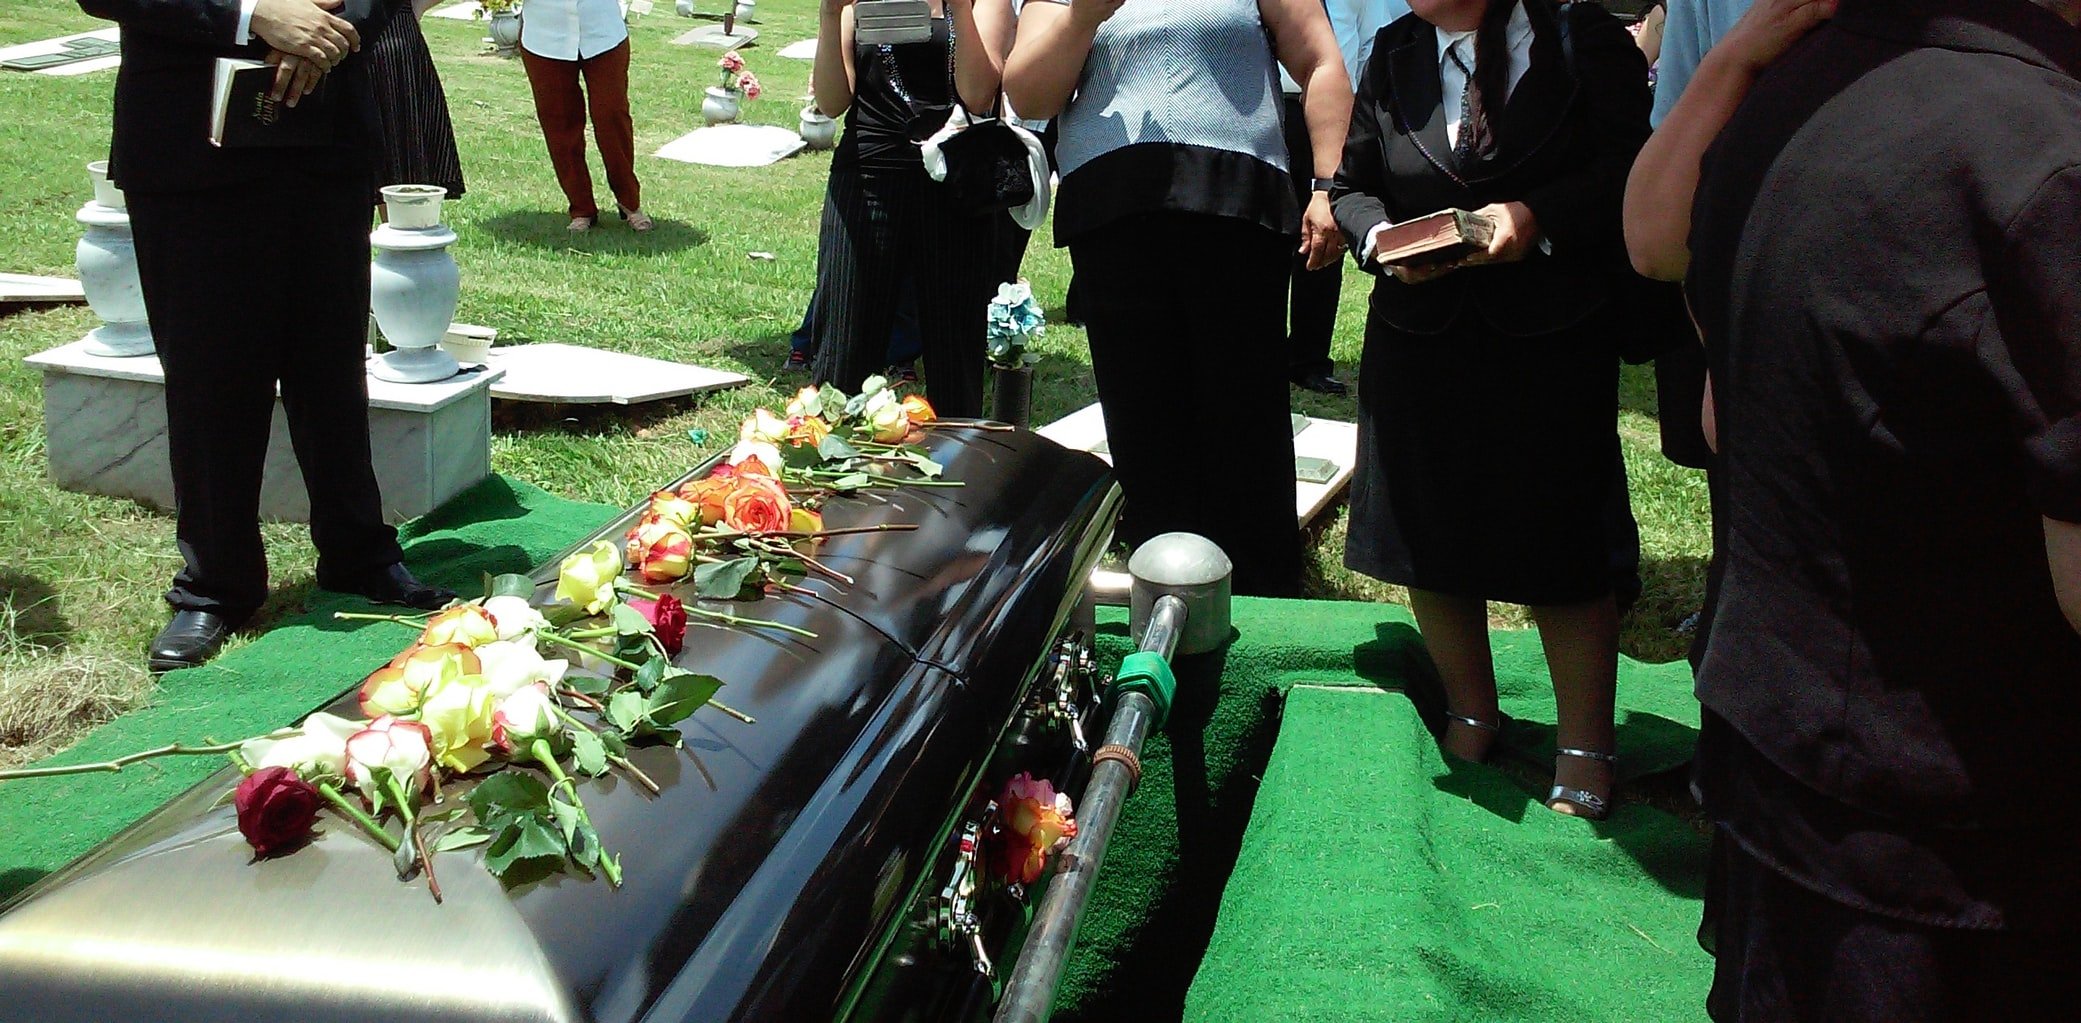 Nach der Beerdigung kümmerten sich ihre Großeltern um die drei Kinder | Quelle: Unsplash